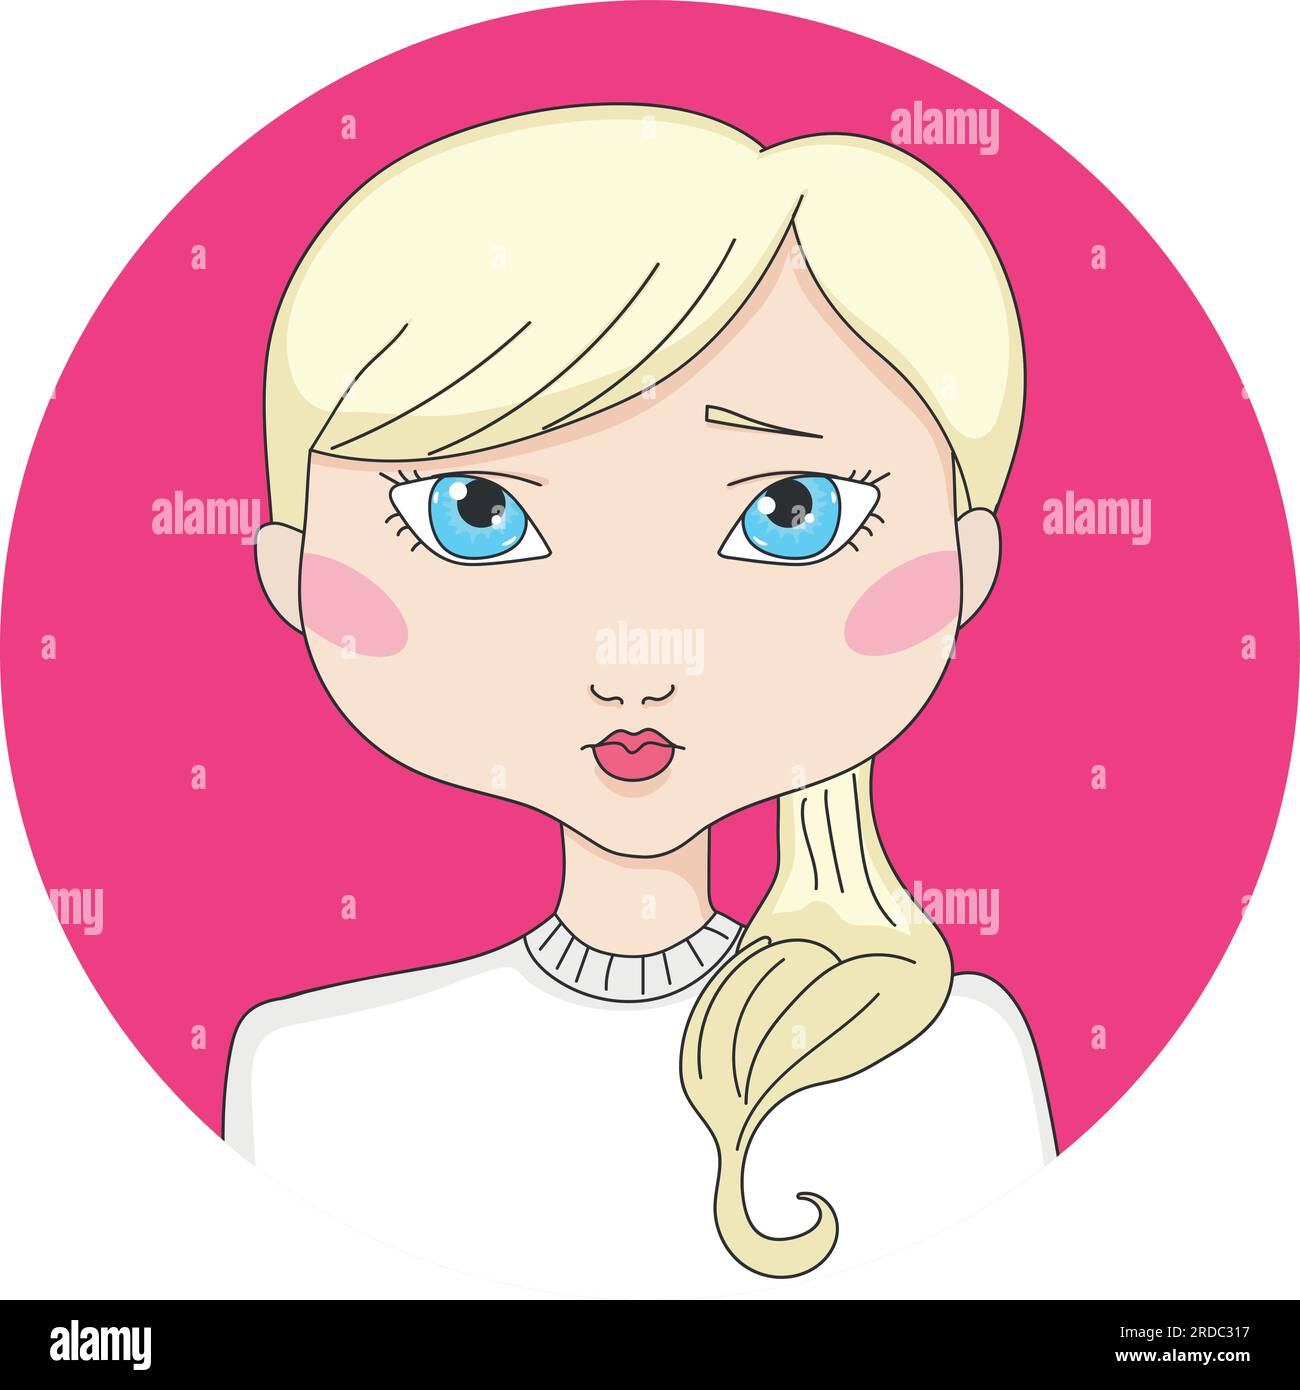 Fille aux cheveux blonds de dessin animé avec les yeux bleus. Avatar de fille dans un cercle. Illustration vectorielle dessinée à la main Illustration de Vecteur